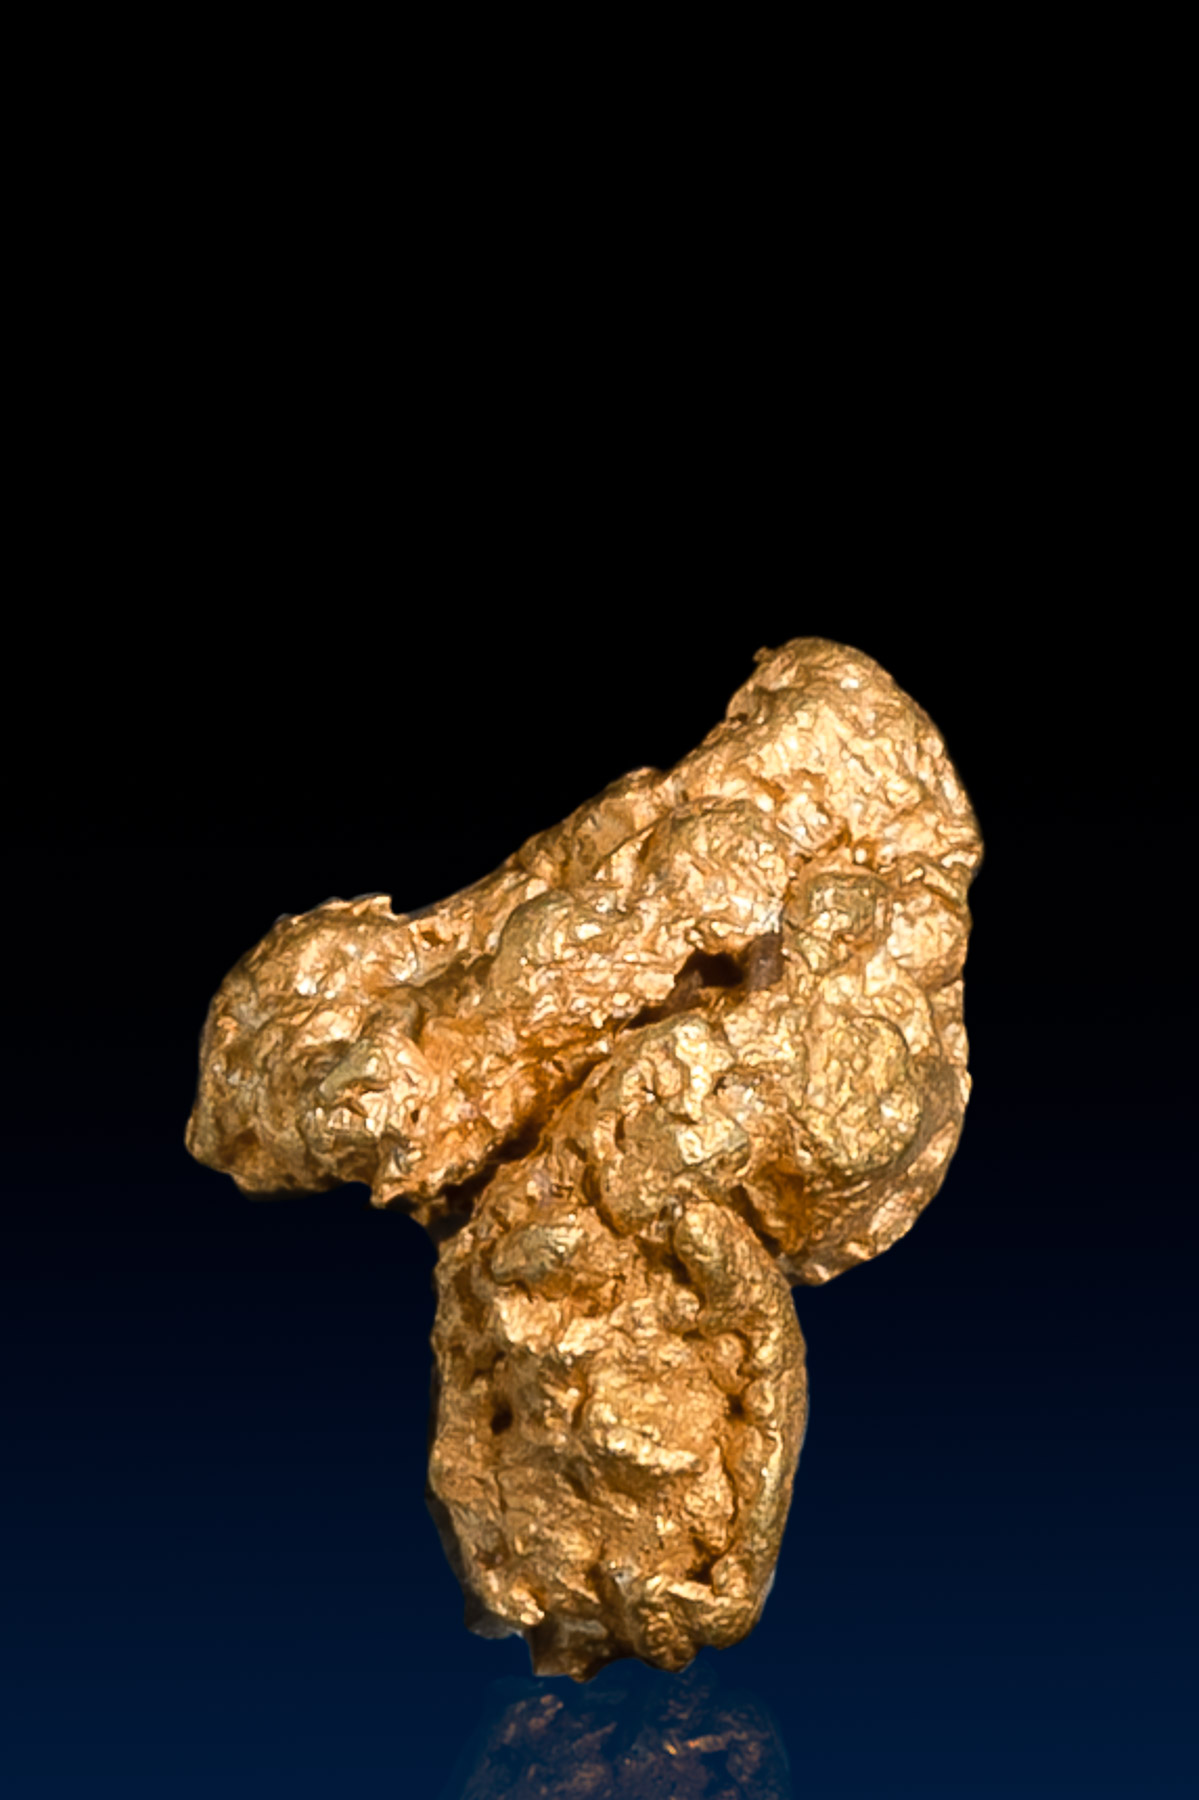 7 Shaped Arizona Natural Gold Nugget - 1.61 grams